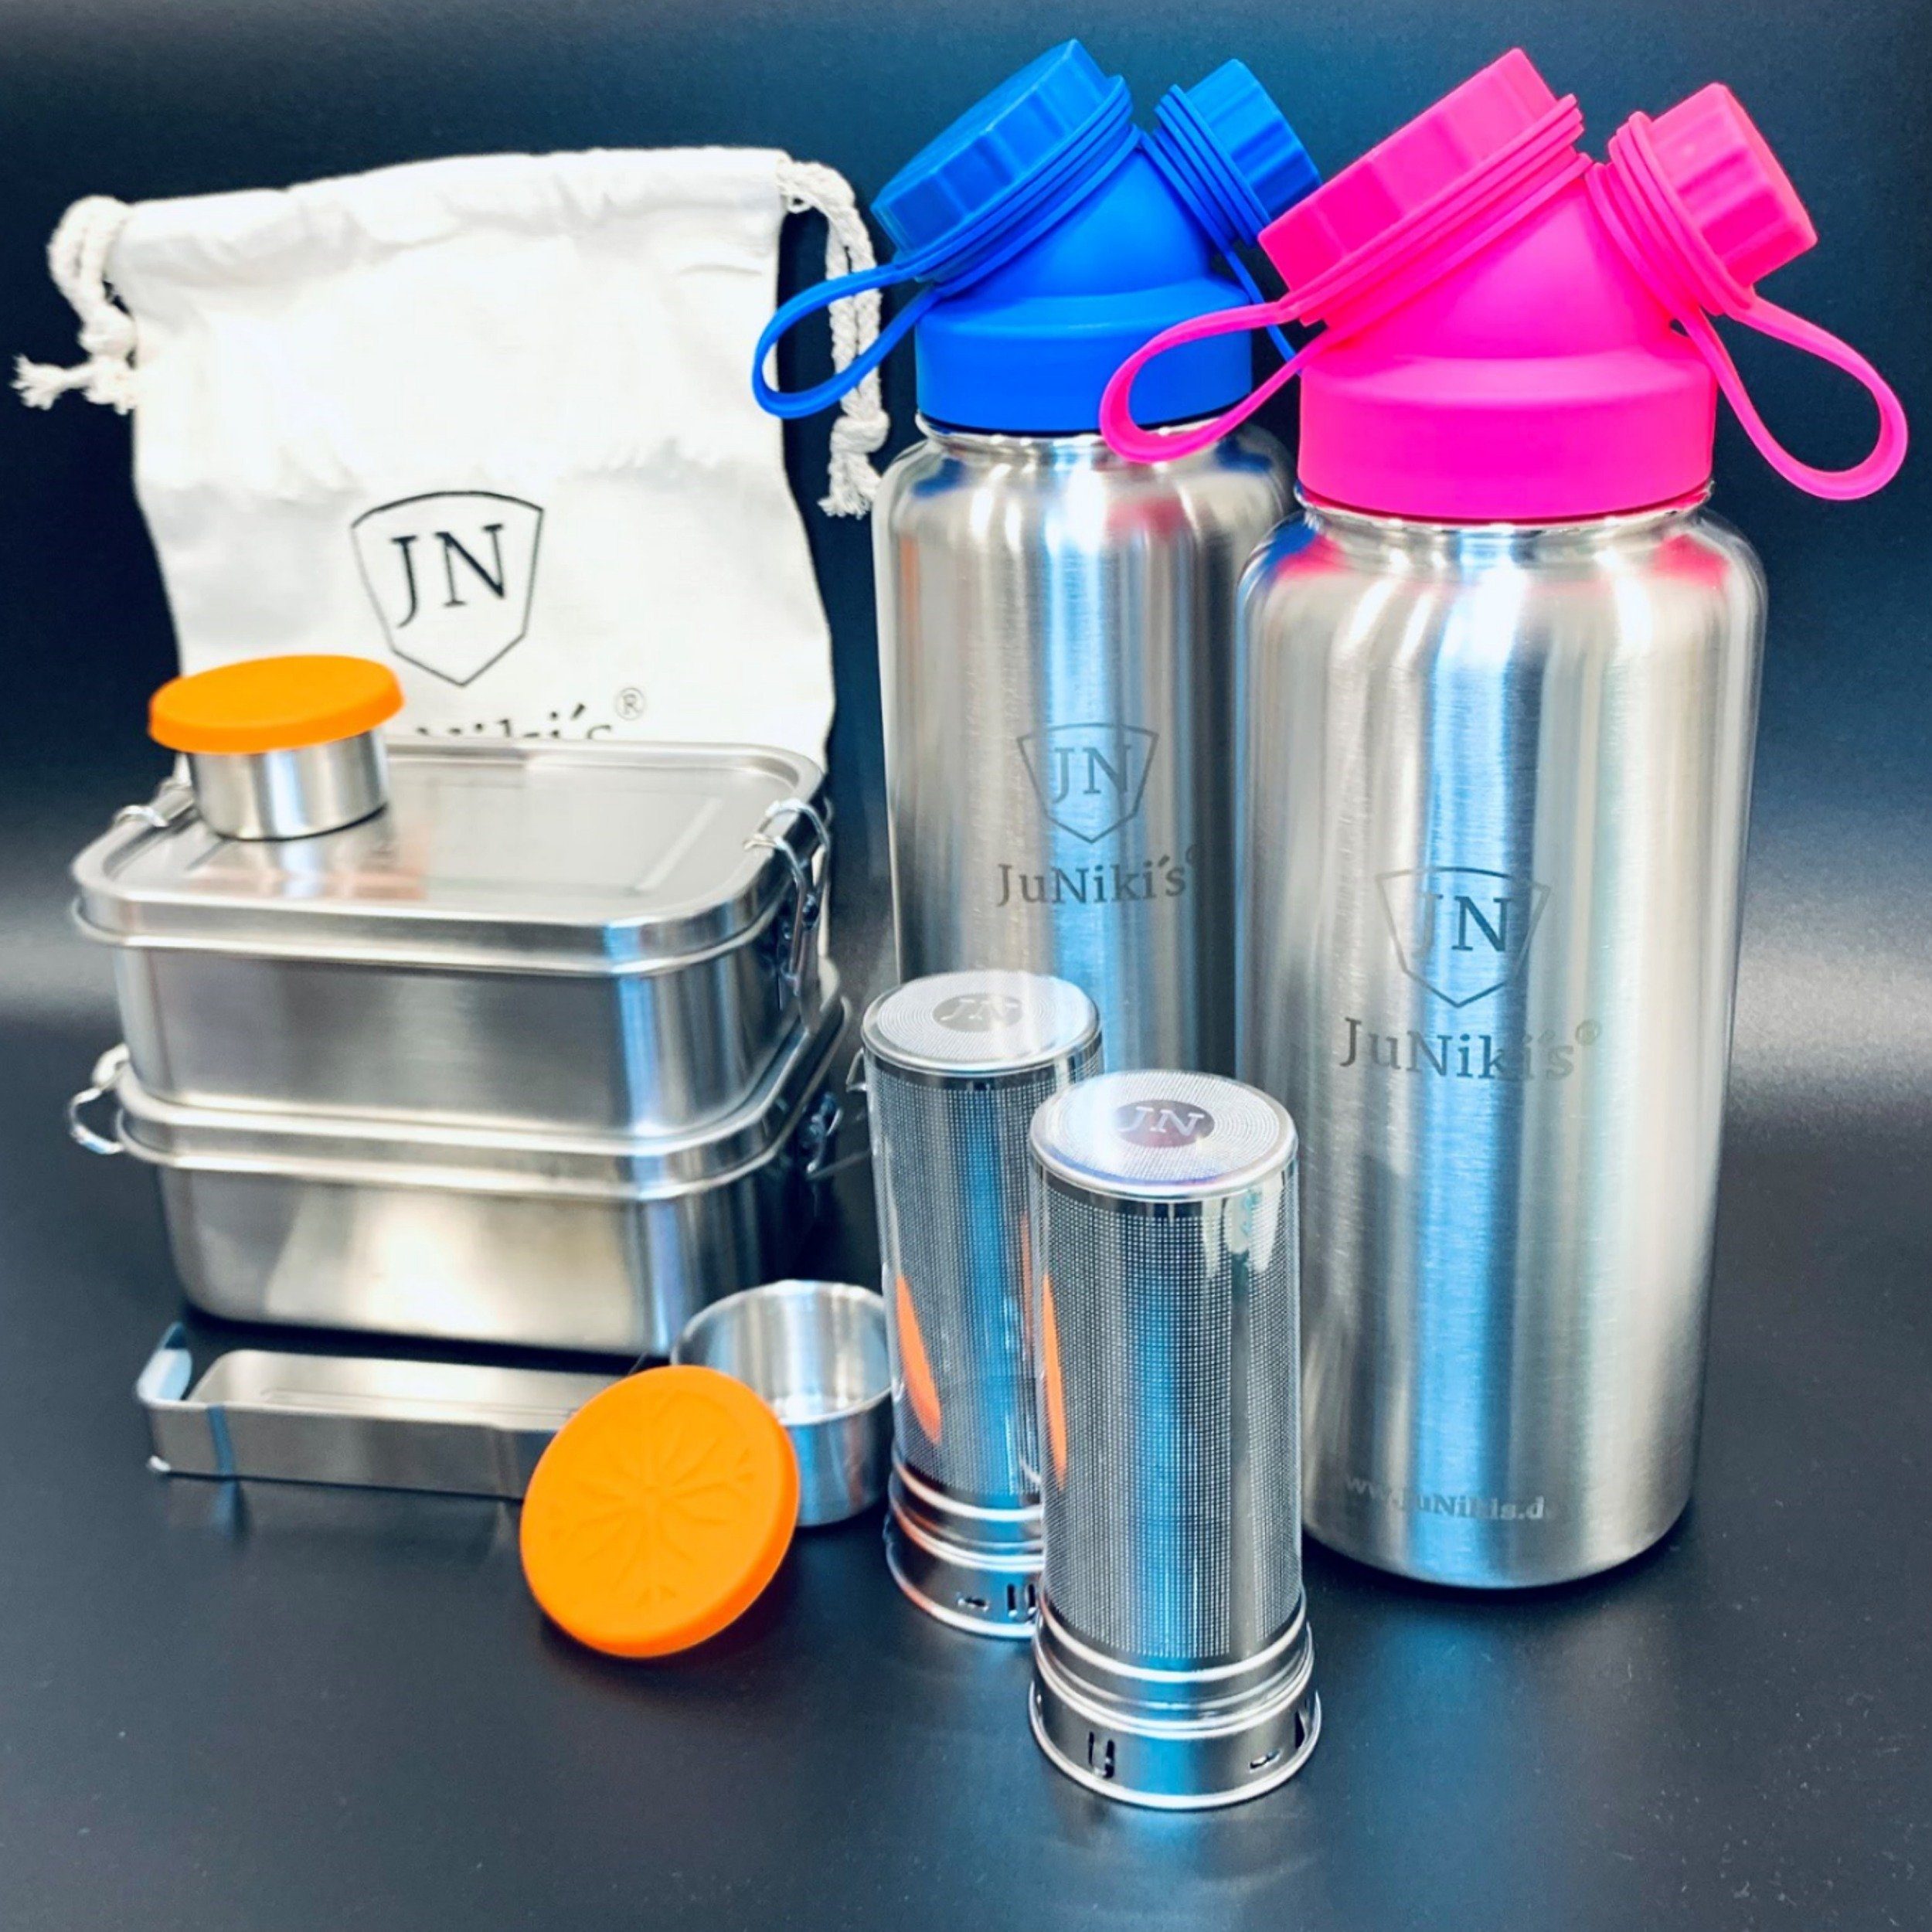 JN JuNiki´s Trinkflasche eco line isolierte Edelstahl Trinkflasche 1 Liter - 2er Set mit Lunchbox zum Vorteilspreis, Auslaufsicher bei Kohlensäure, Geschirrspüler-tauglich, mit praktischem Deckel mit Trink- und Nachfüllöffnung, Teefilter inklusive Blau-Pink